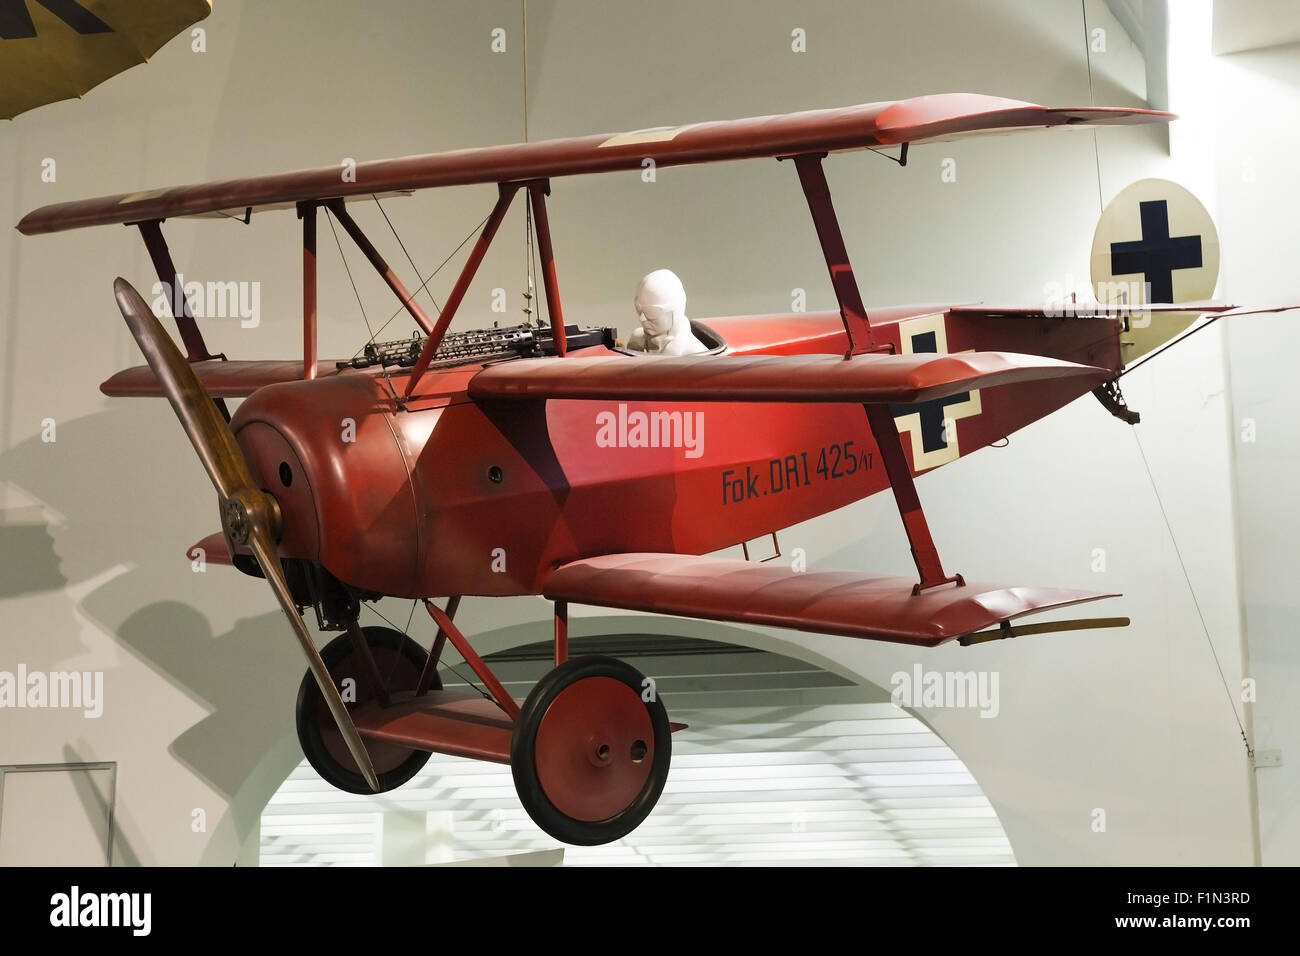 Munich Deutsches Museum: Fokker Dr.1 Triplane, made famous by Manfred Albrecht Freiherr von Richthofen, the 'Red Baron'. Stock Photo